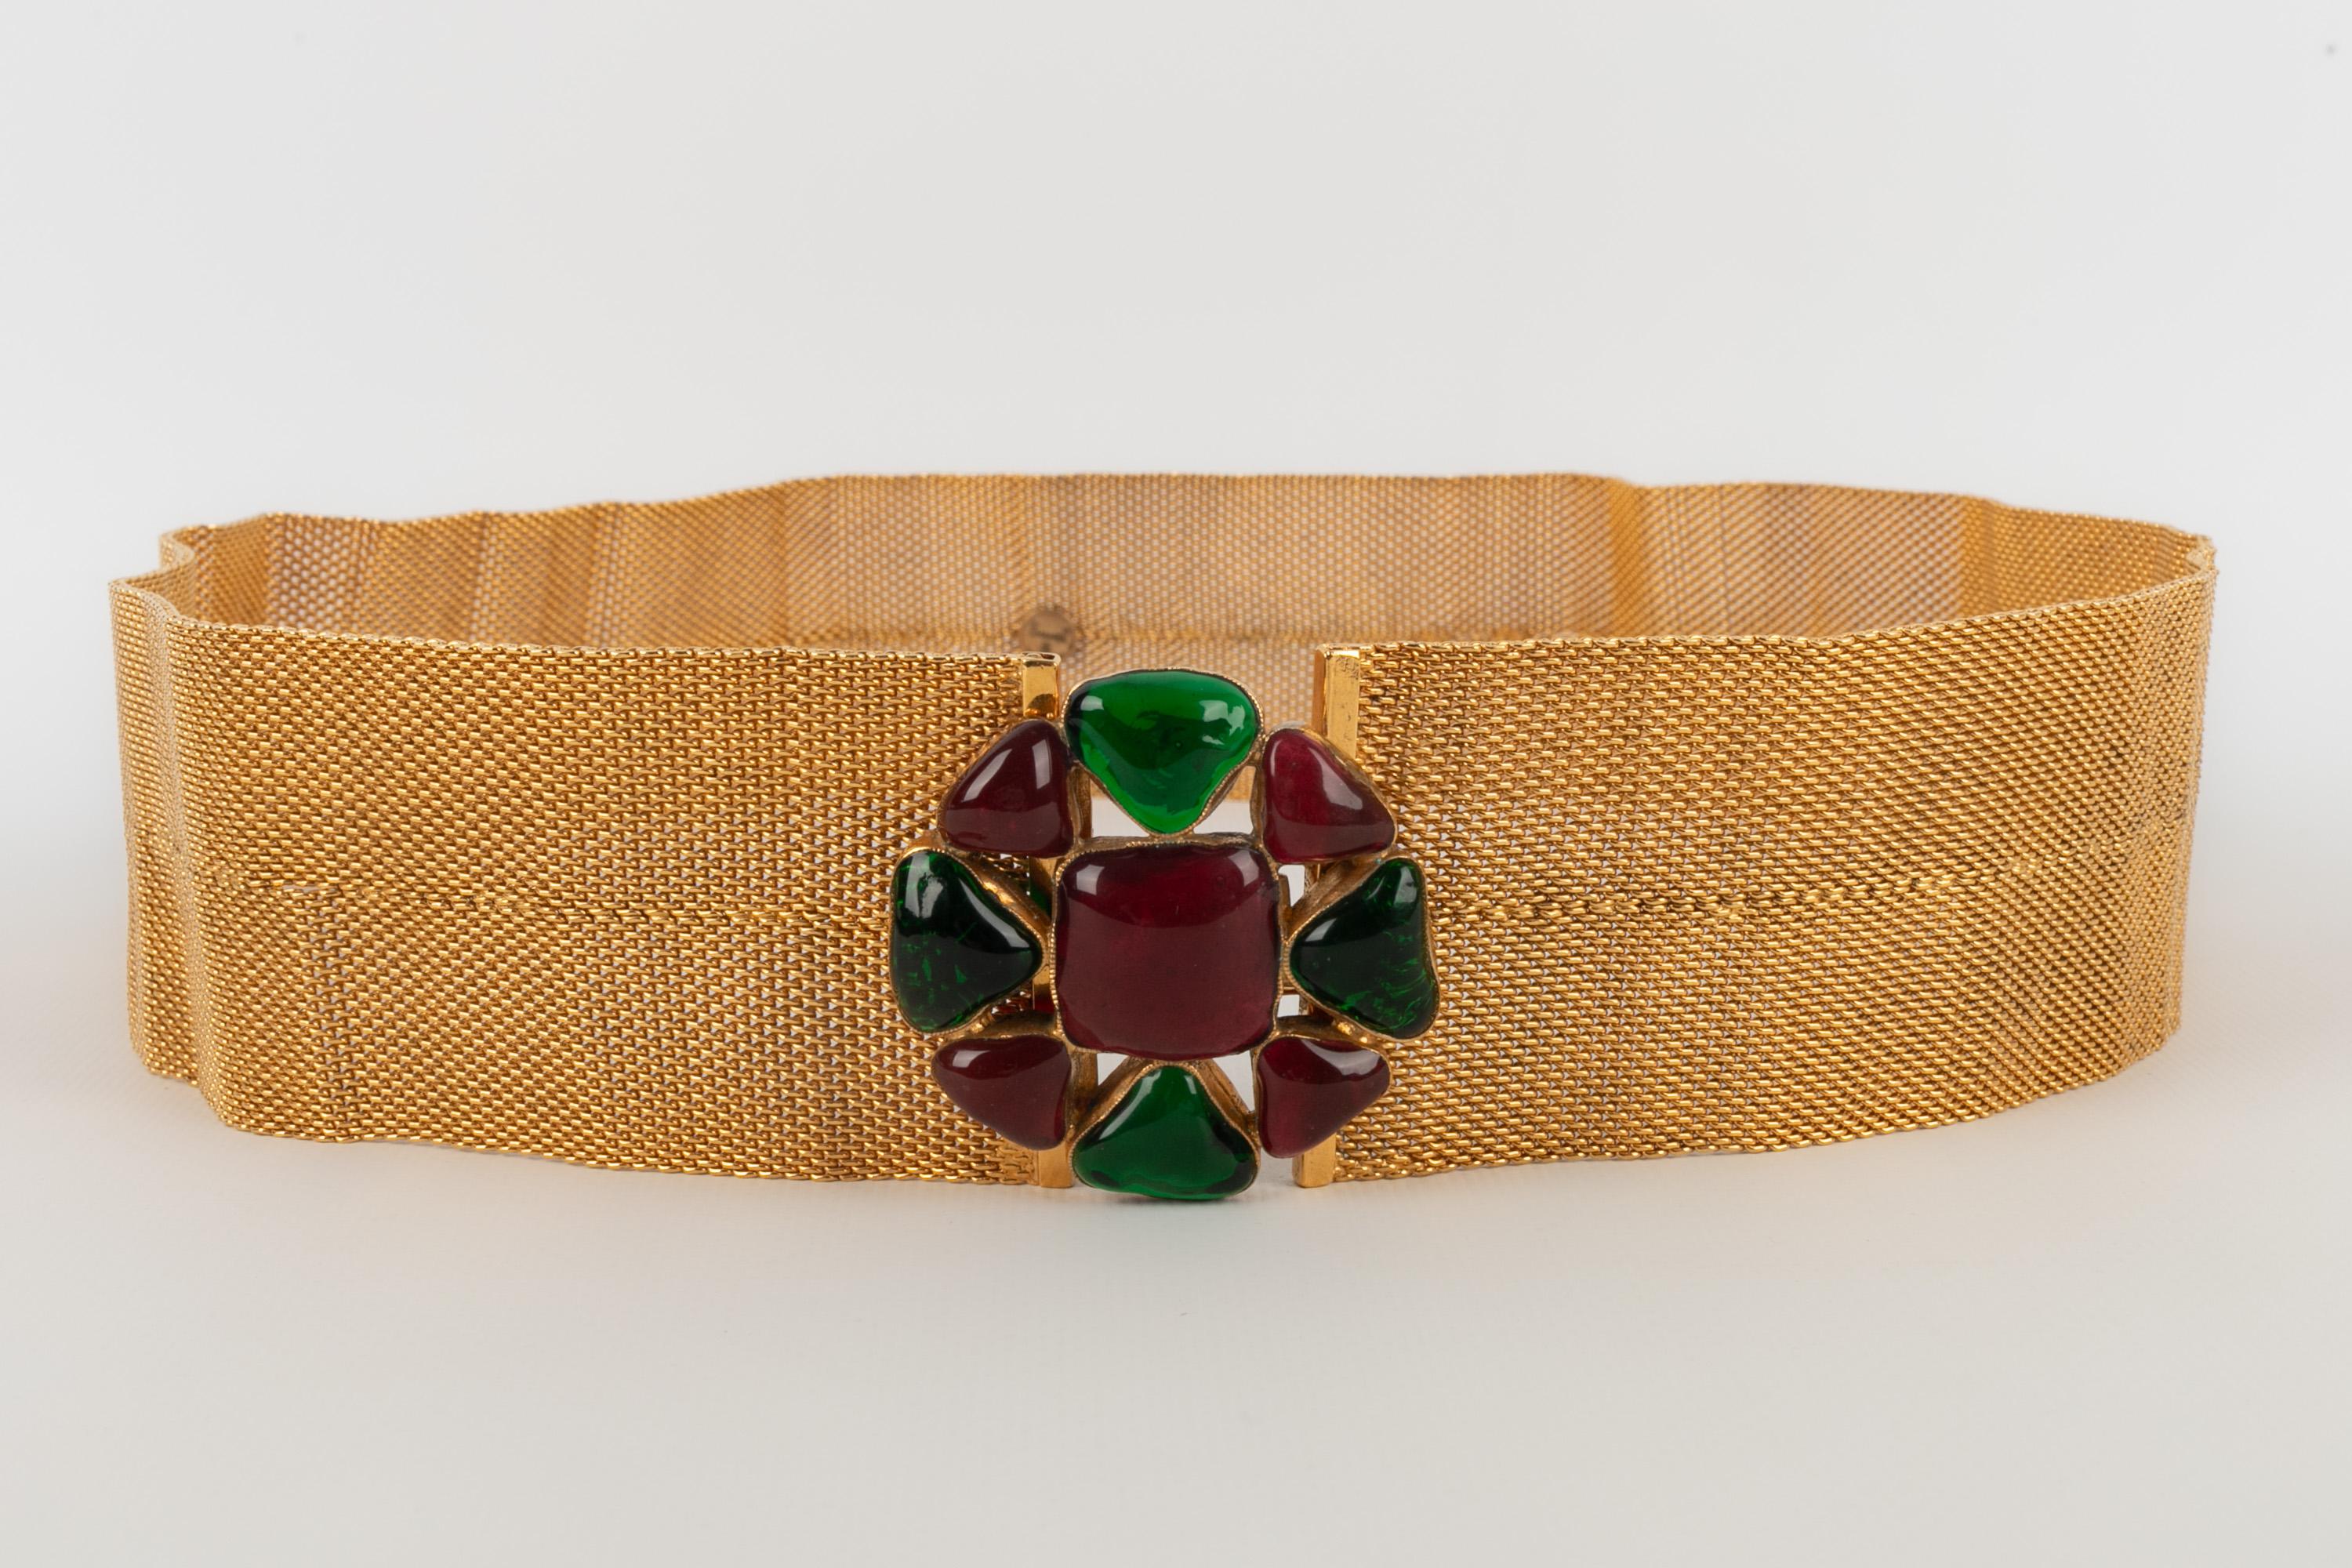 Chanel jewelry belt 1996 1